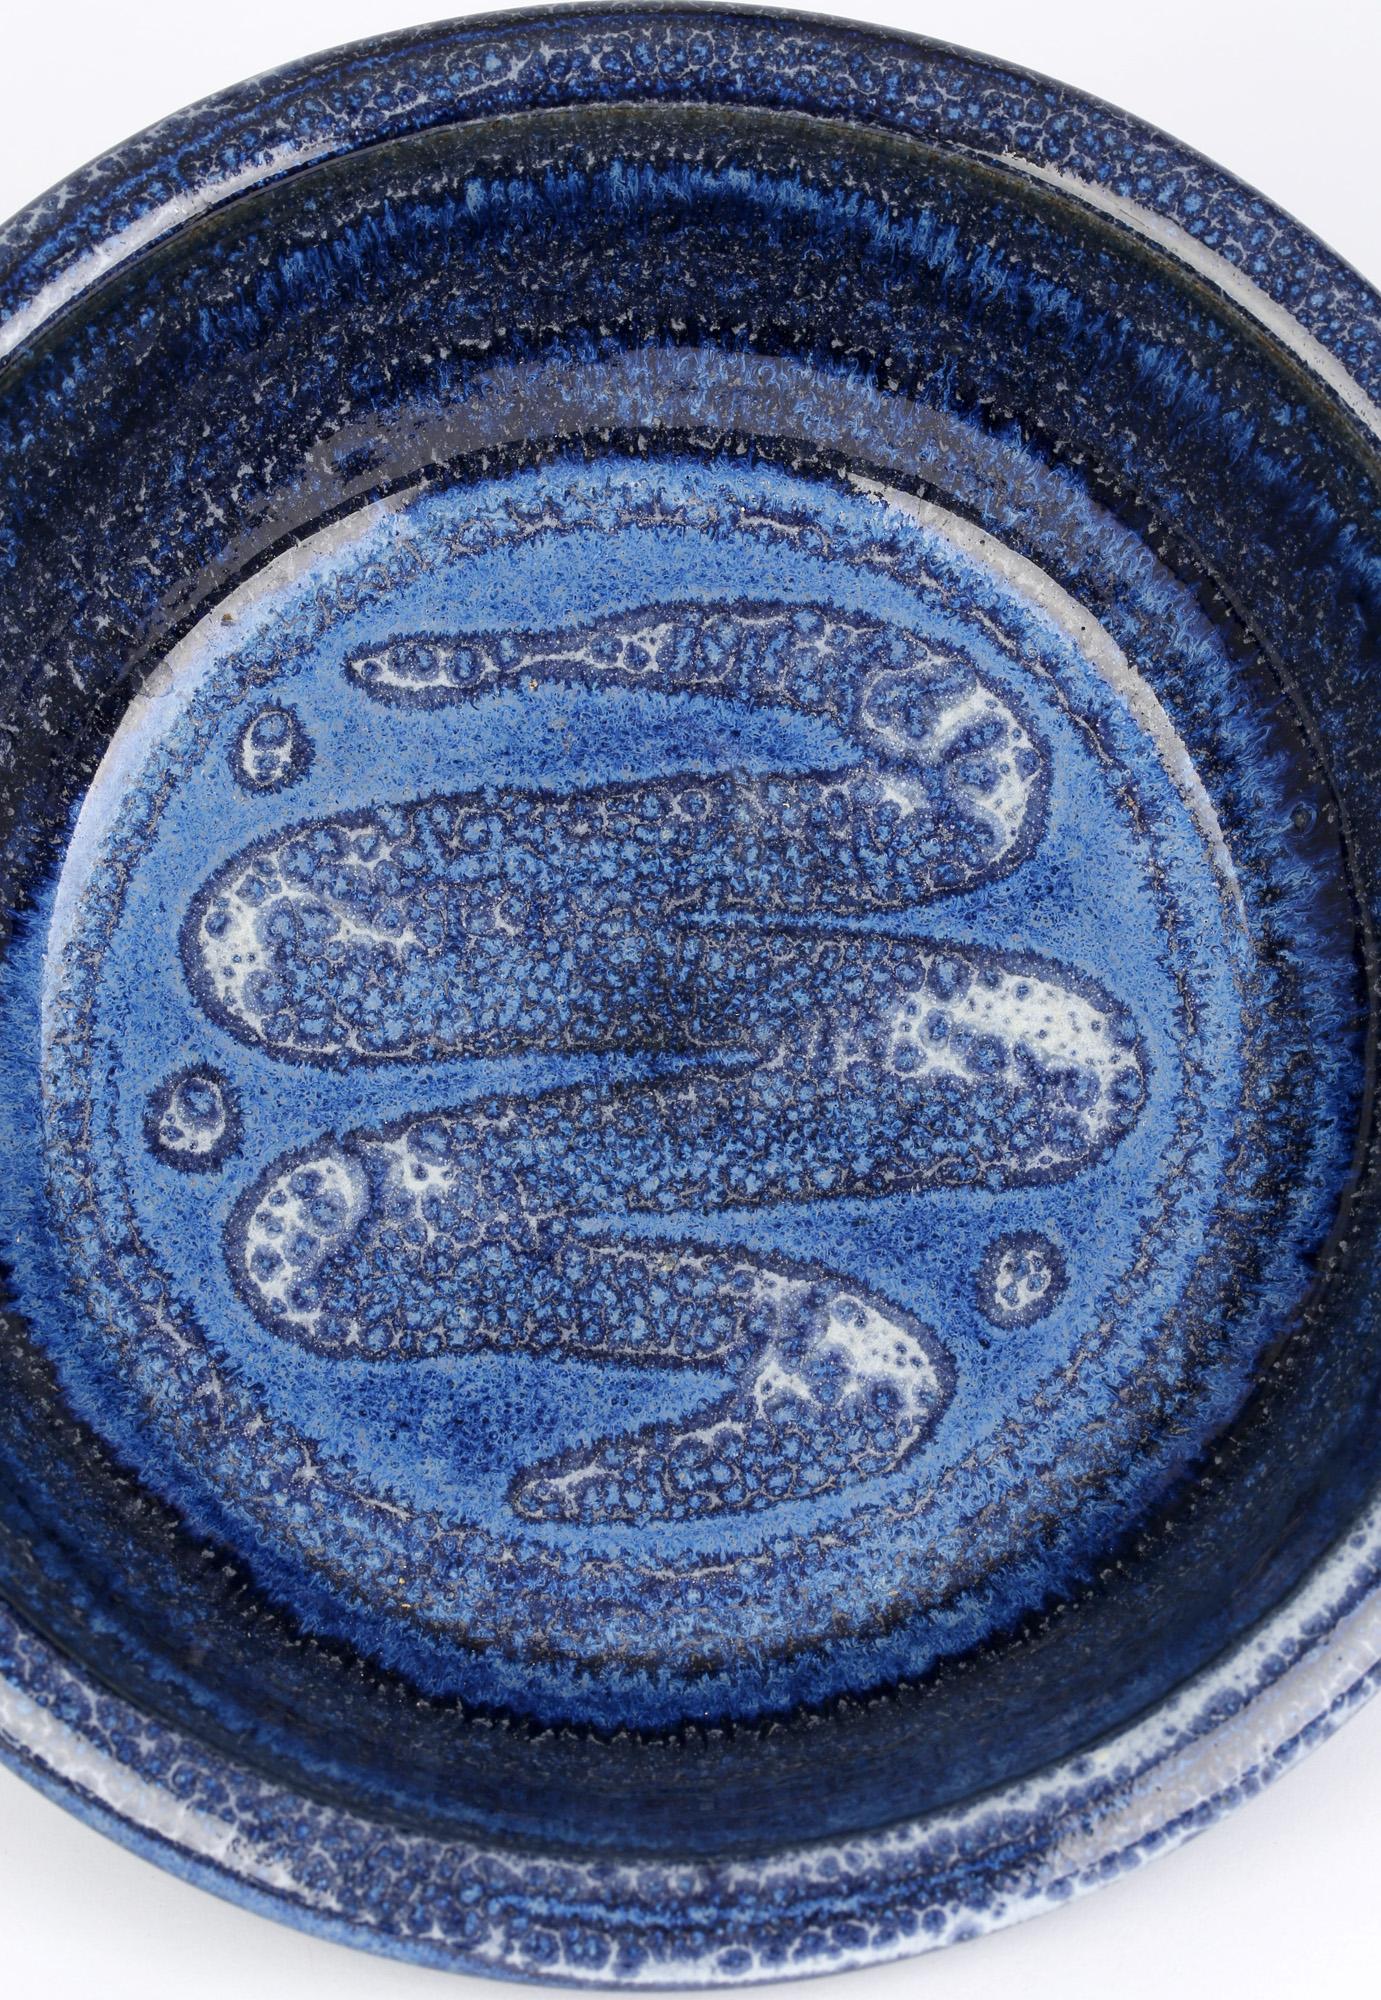 snake pottery